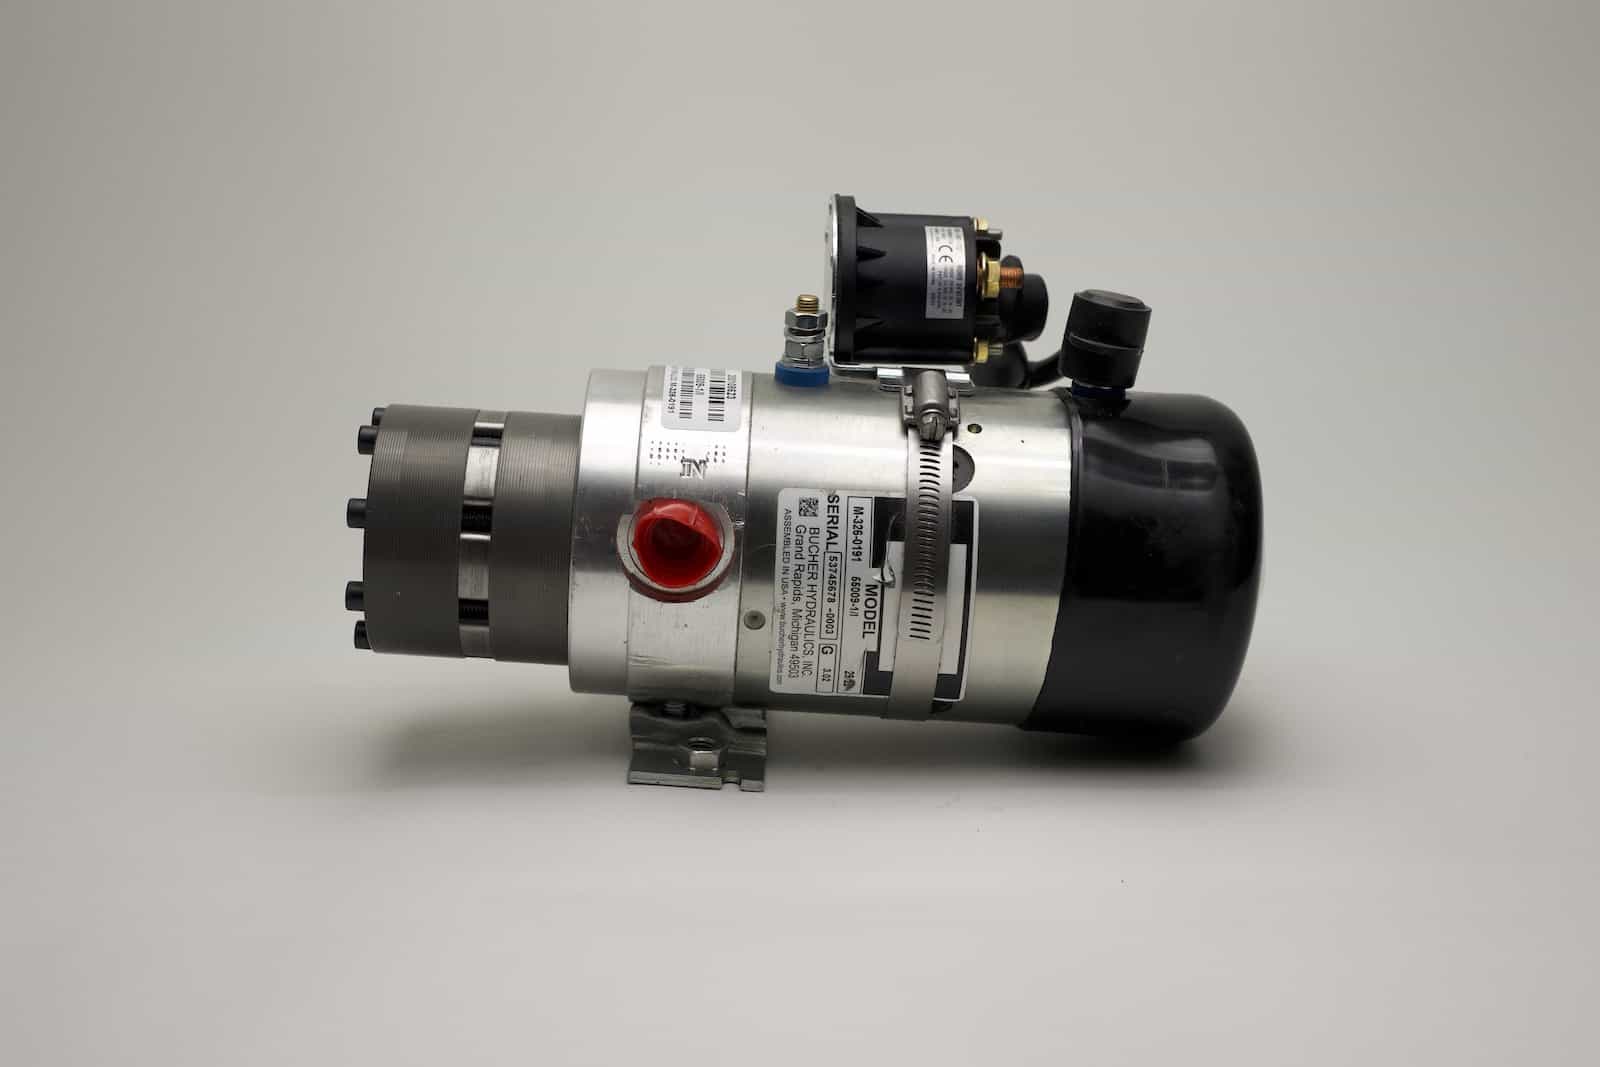 Automatische Pumpe bw 500gph 12v - 1821106